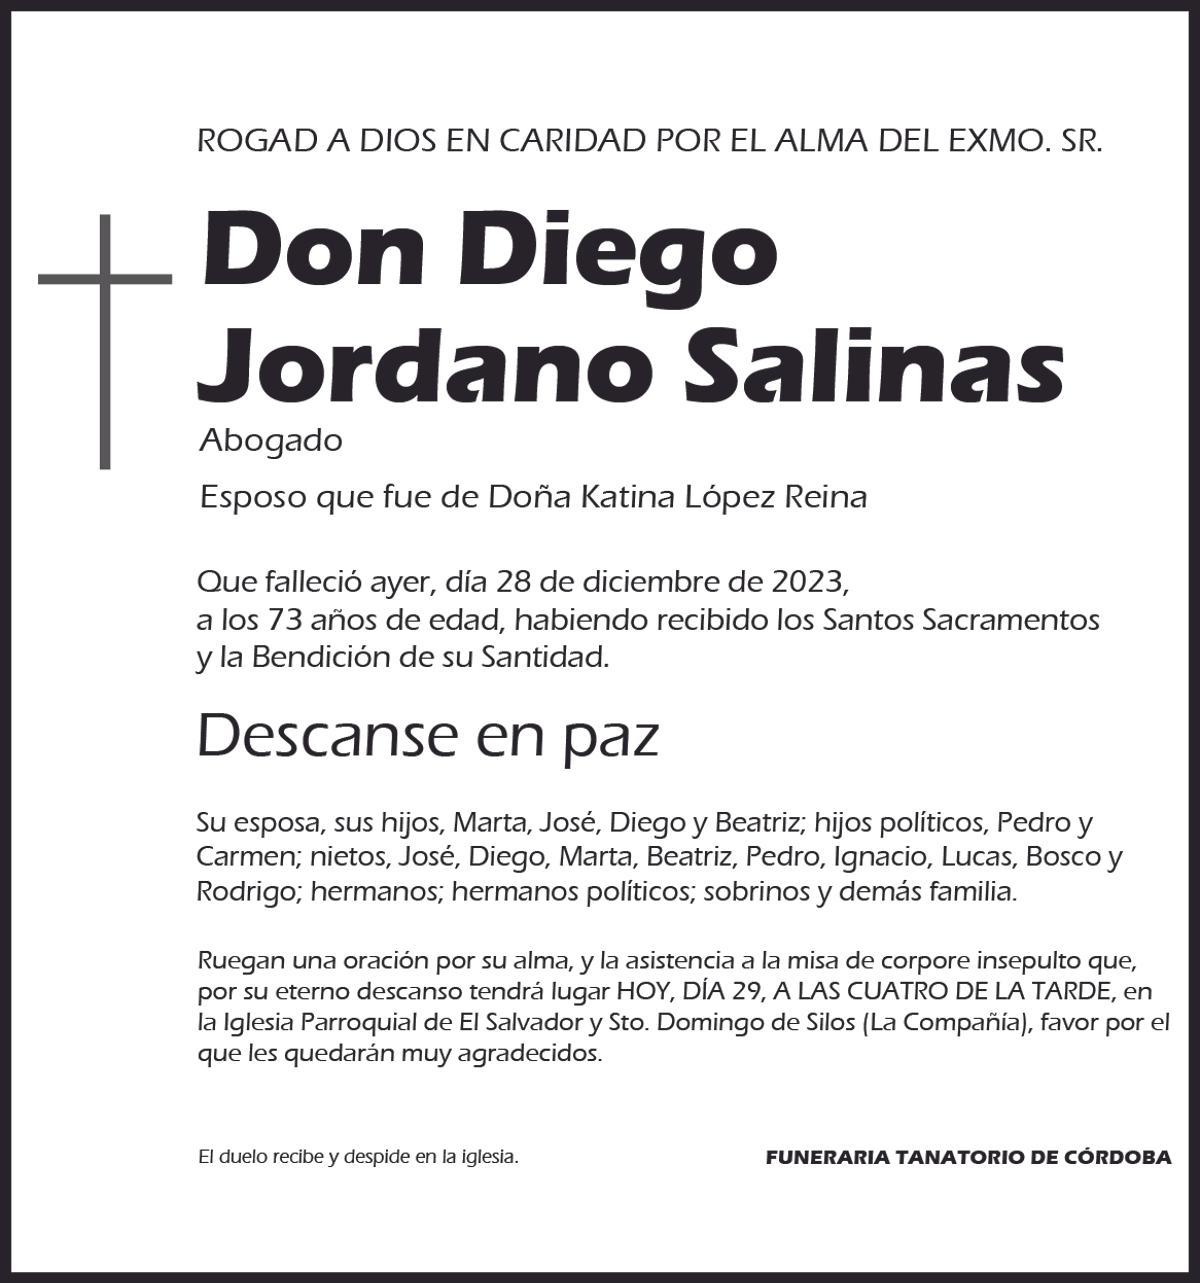 Diego Jordano Salinas